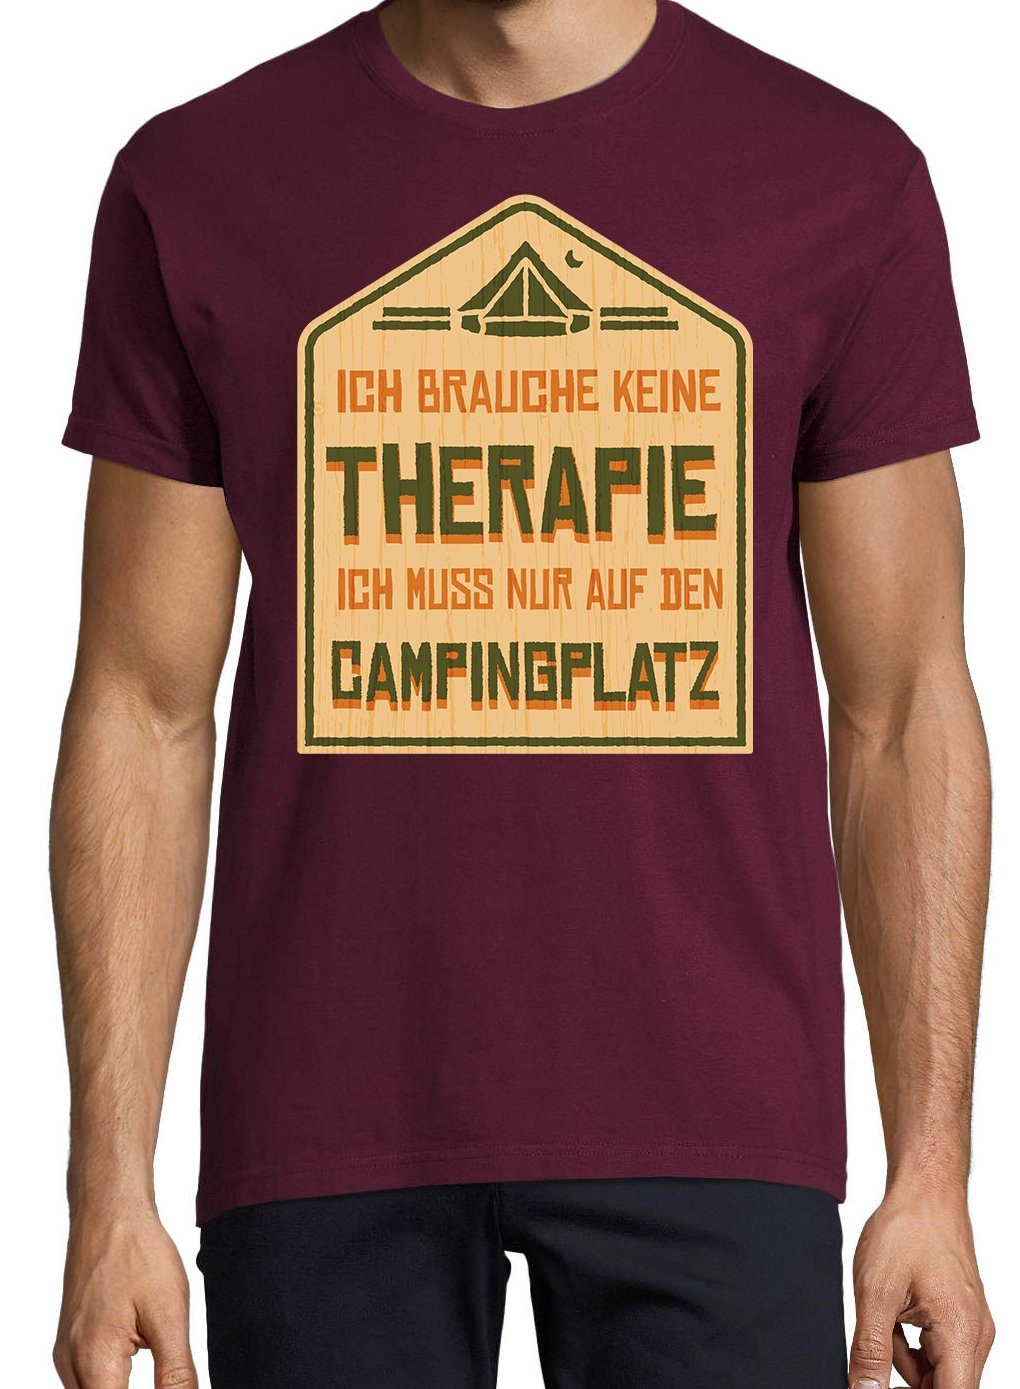 Den Ich Campingplatz Auf mit Burgund Frontprint Youth T-Shirt Camping lustigem Designz Herren Shirt Muss